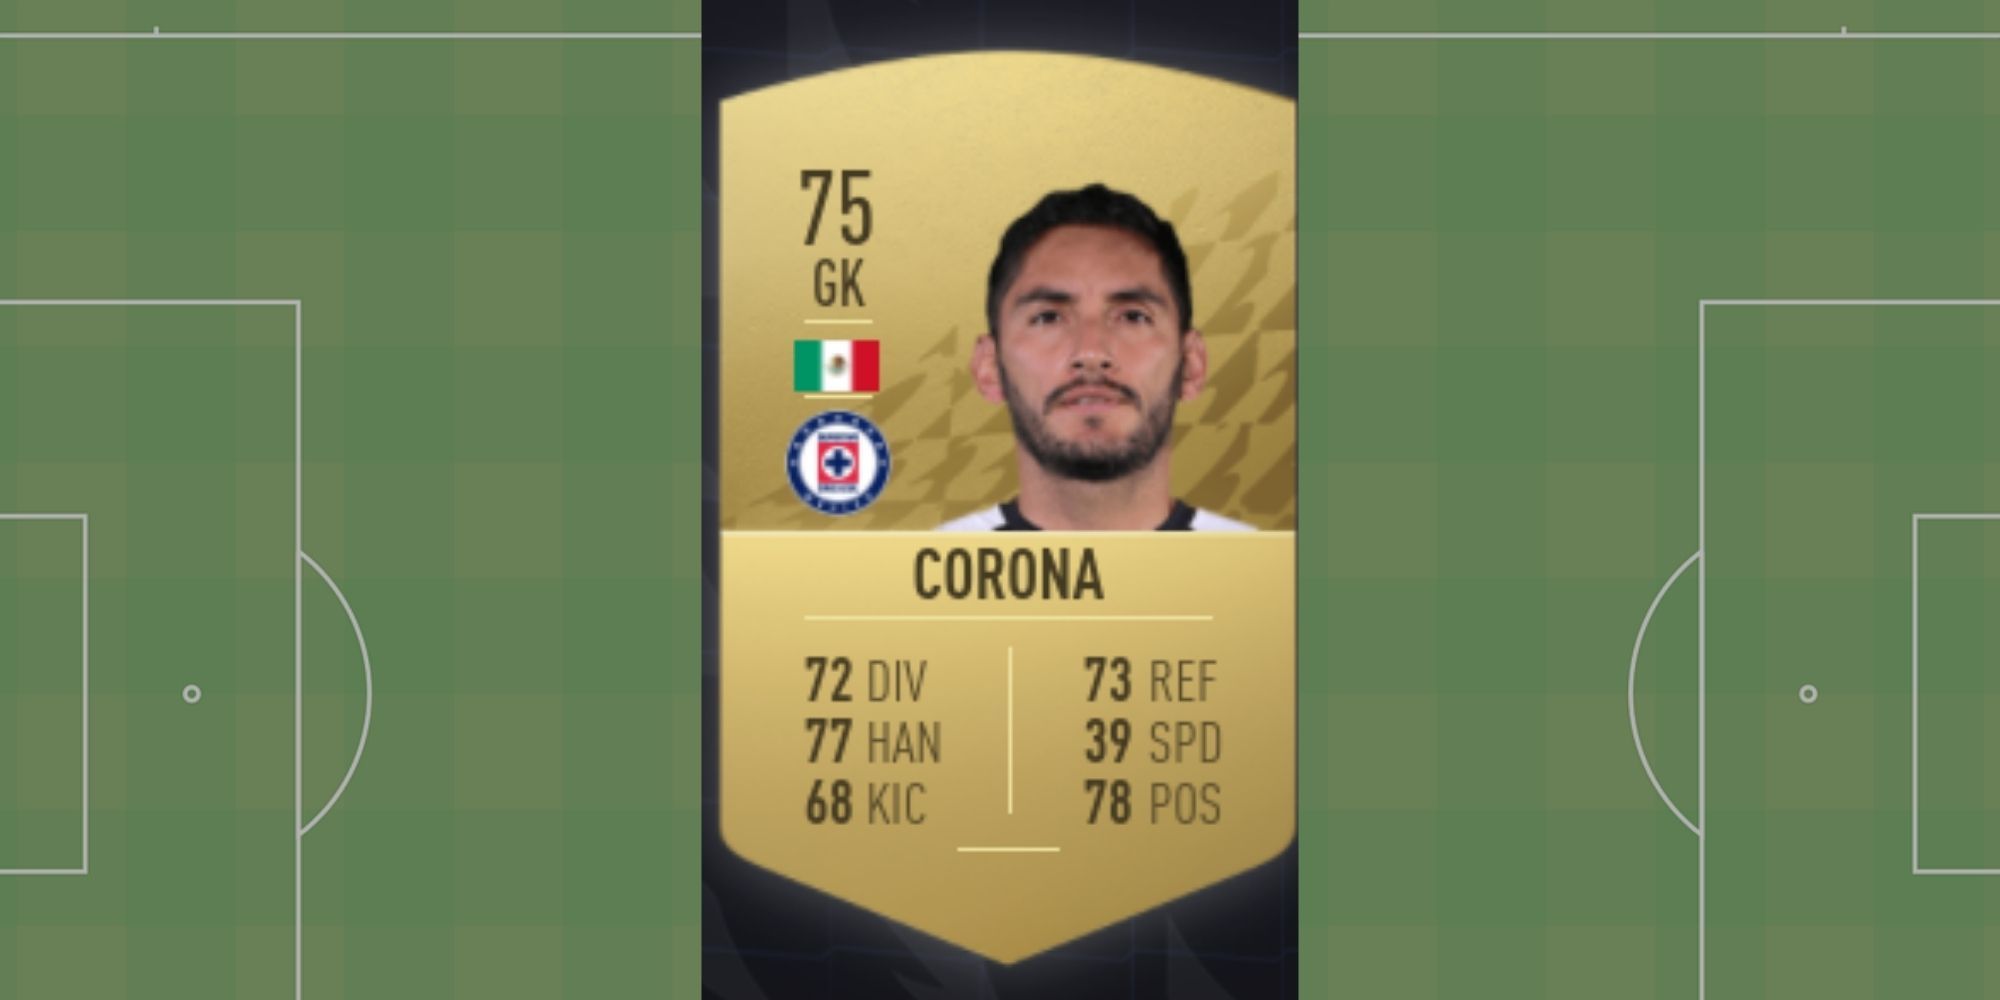 Jose de Jesus Corona's FUT card in FIFA 22.